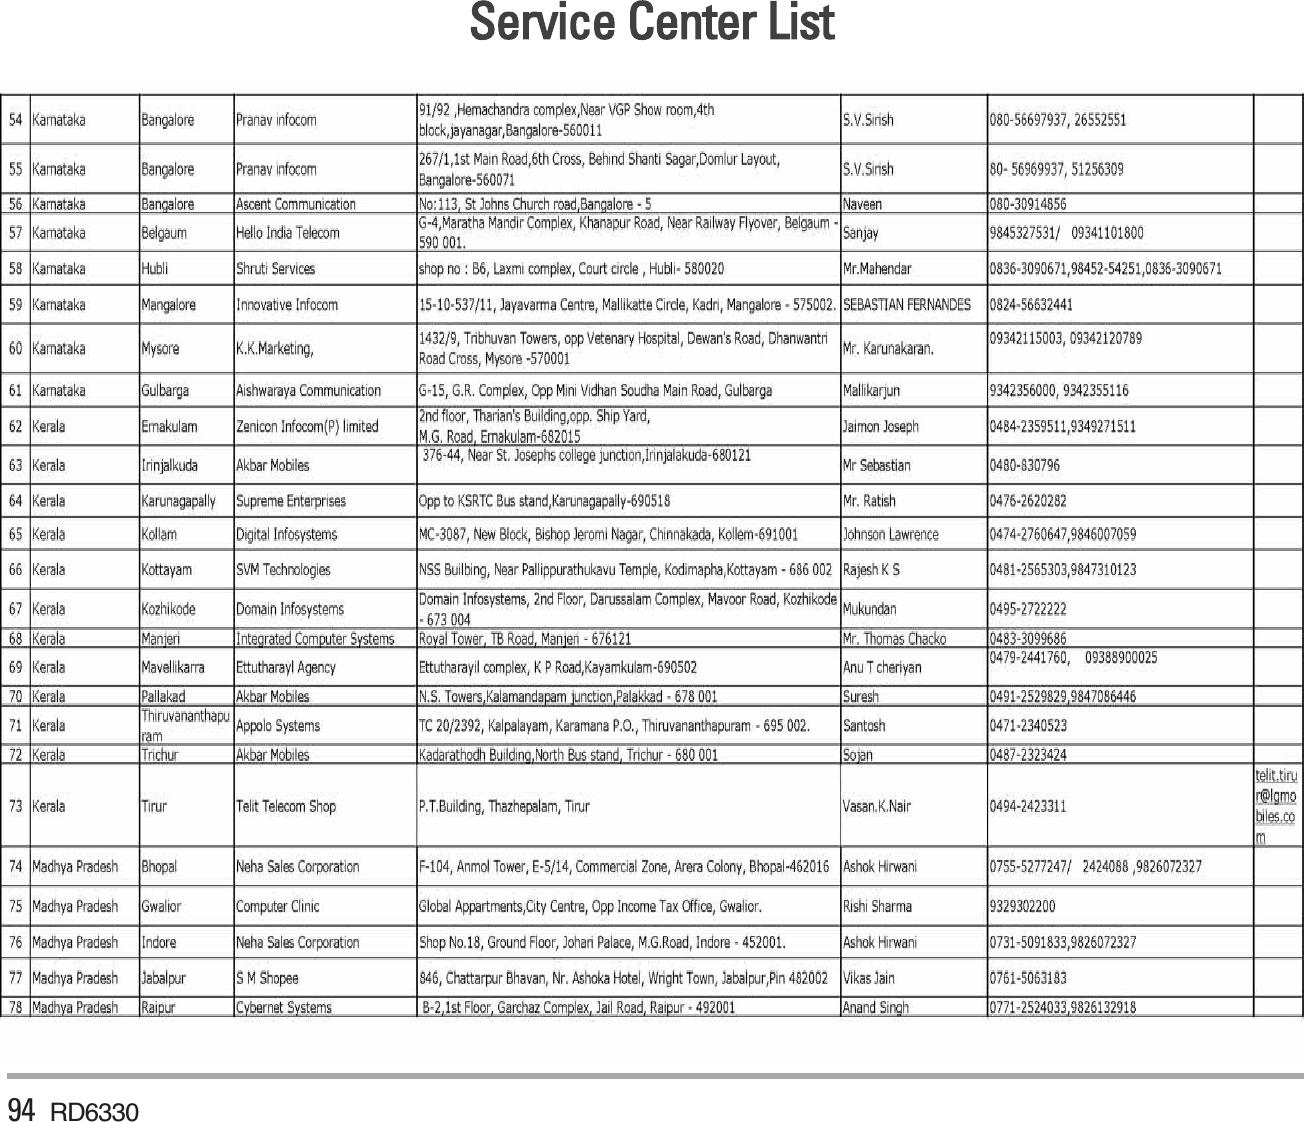 94 RD6330Service Center List